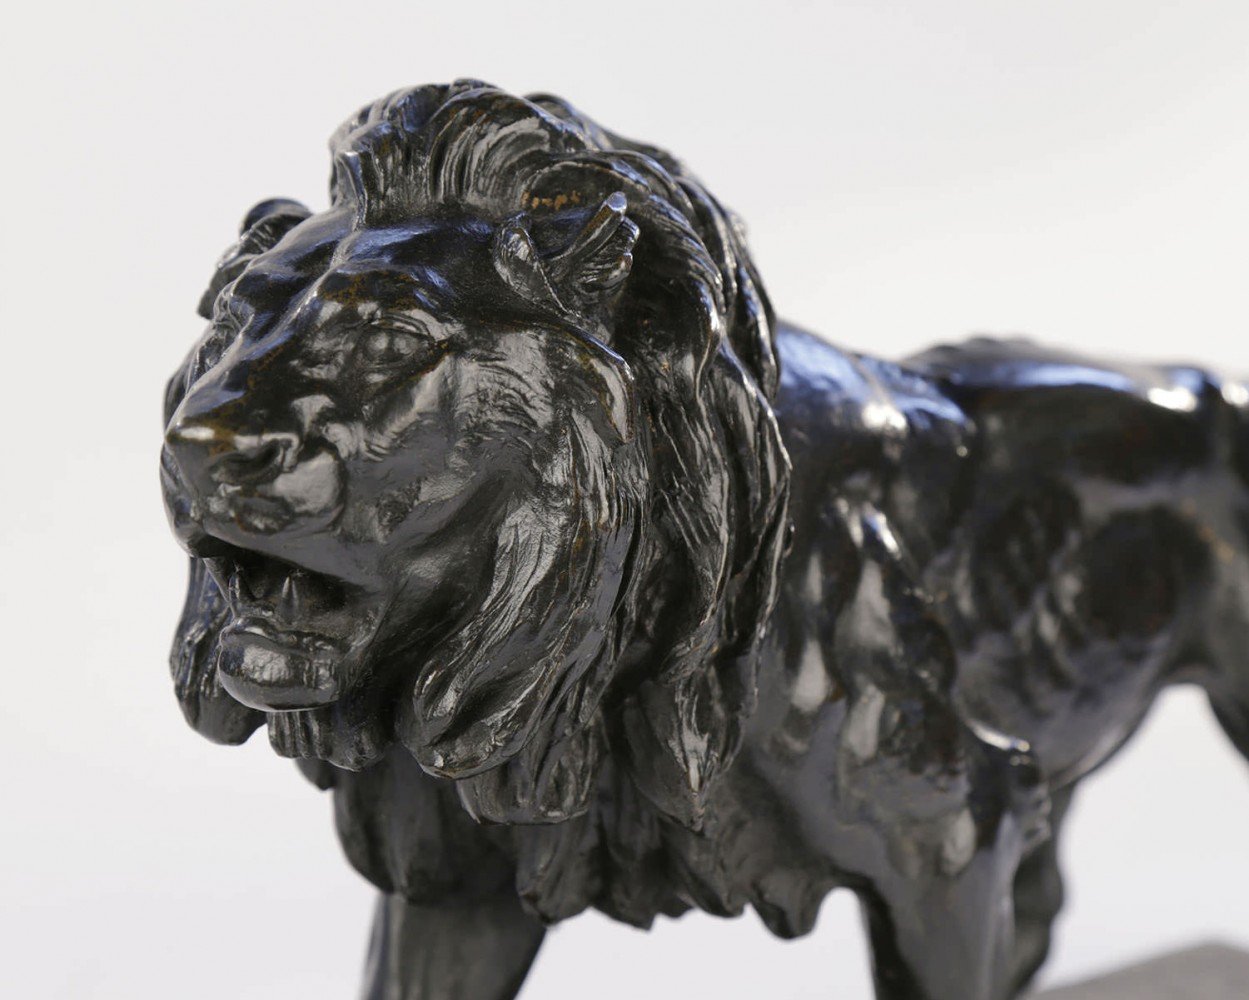 Le Lion Qui Marche by Antoine-Louis Barye